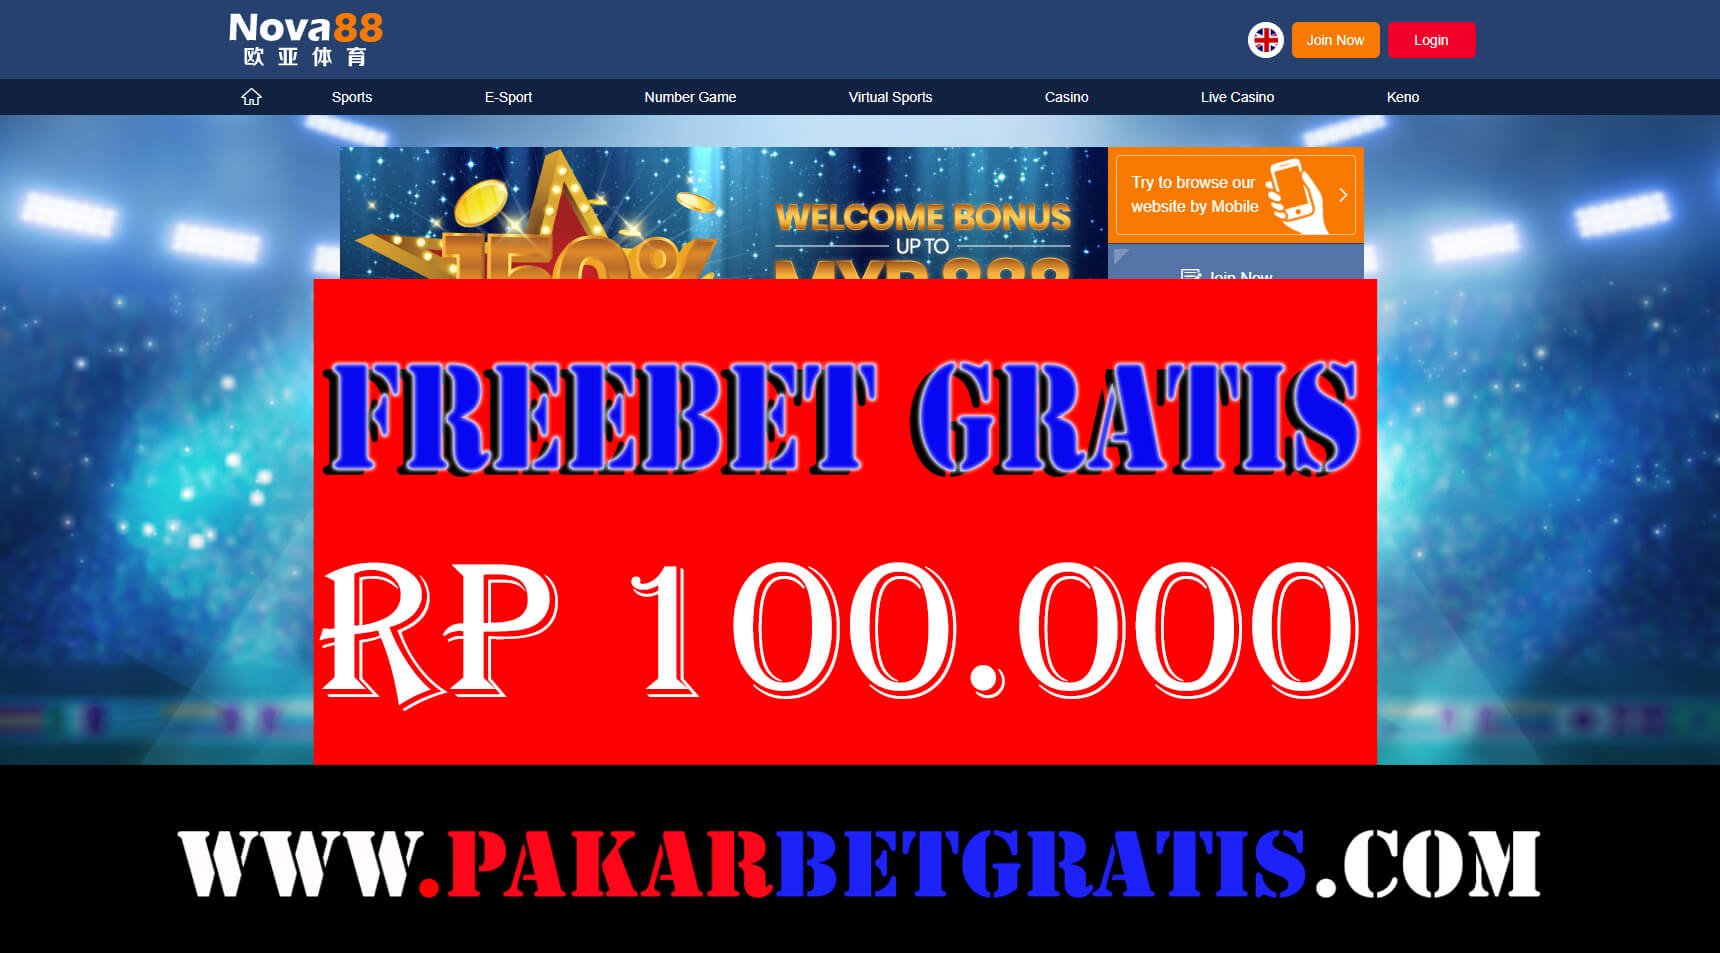 Freebet Gratis Nova88 Rp 100.000 Tanpa Deposit